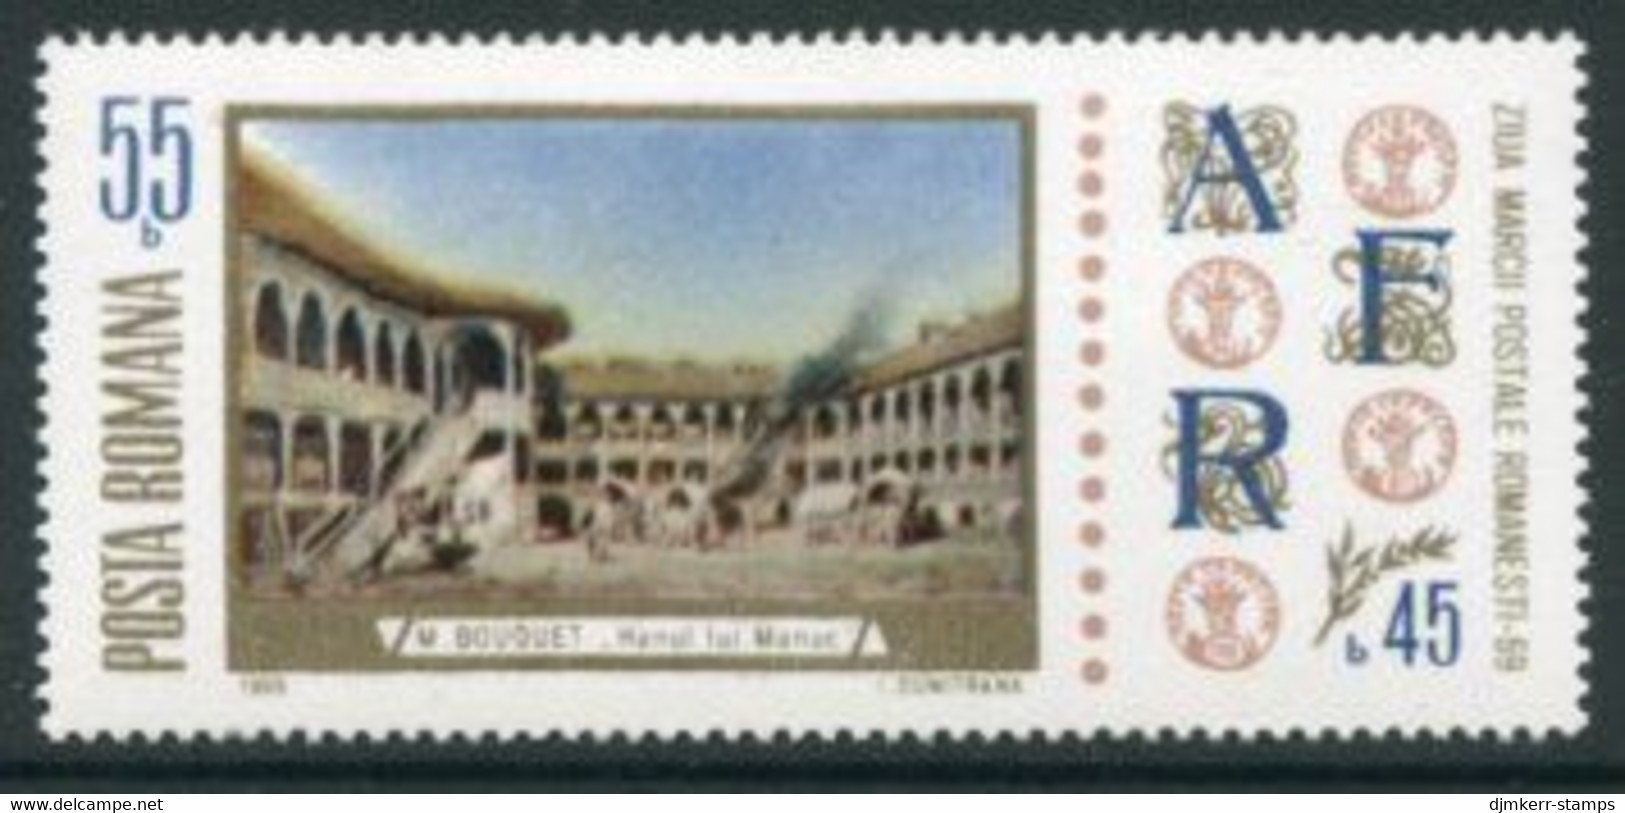 ROMANIA 1969 Stamp Day MNH / **.  Michel 2808 - Ongebruikt